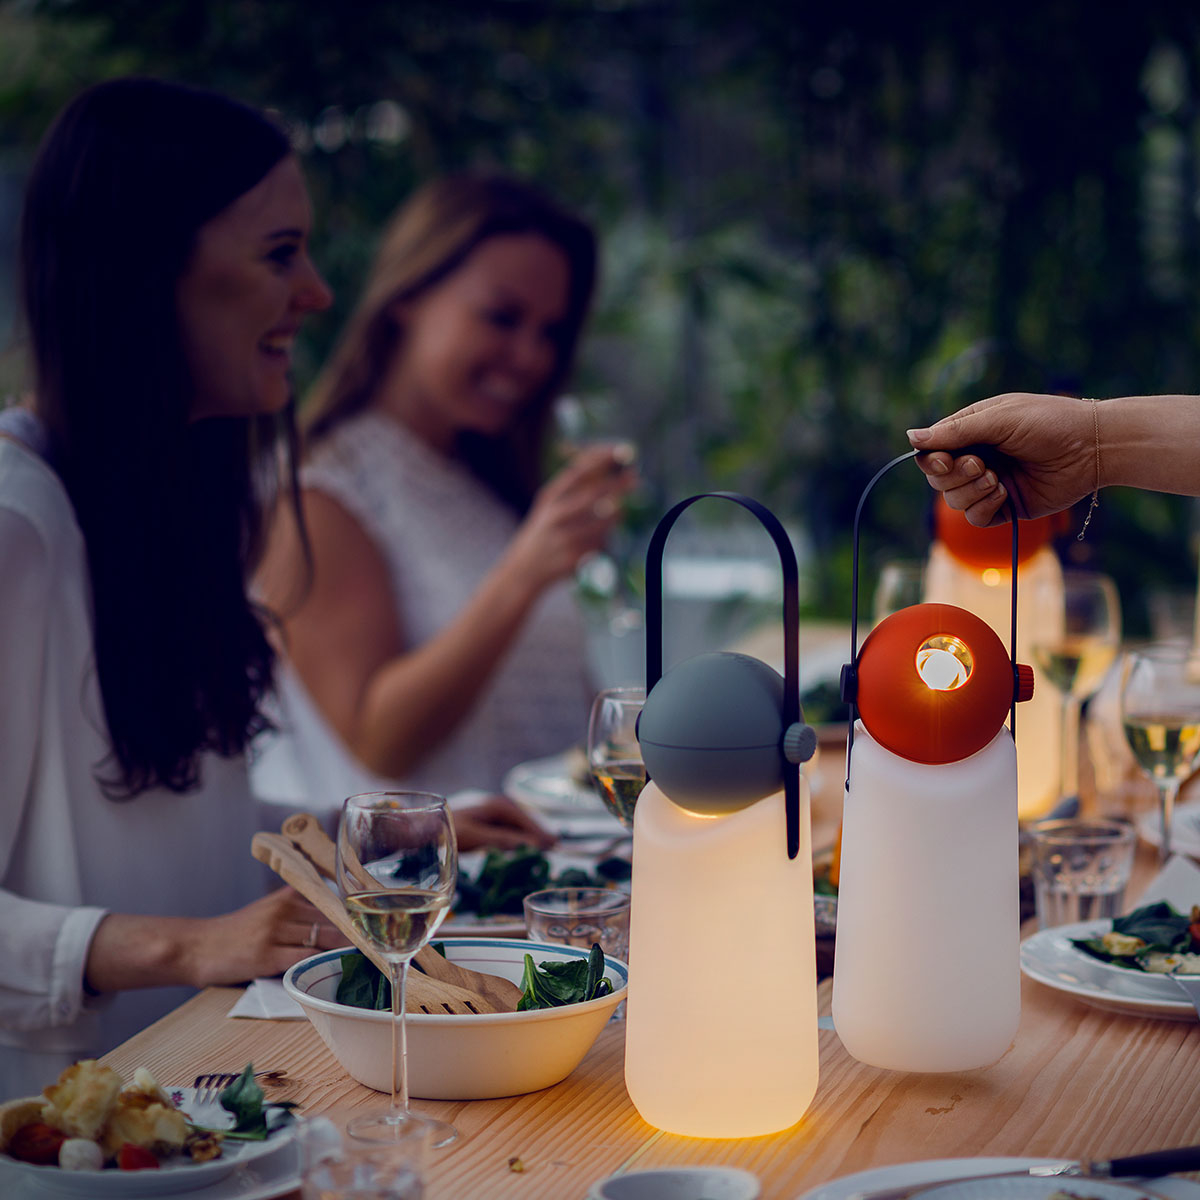 Weltevree Guidelight Tomato Red, eine einzigartig gestaltete Außenlampe mit dimmbarem LED-Modul